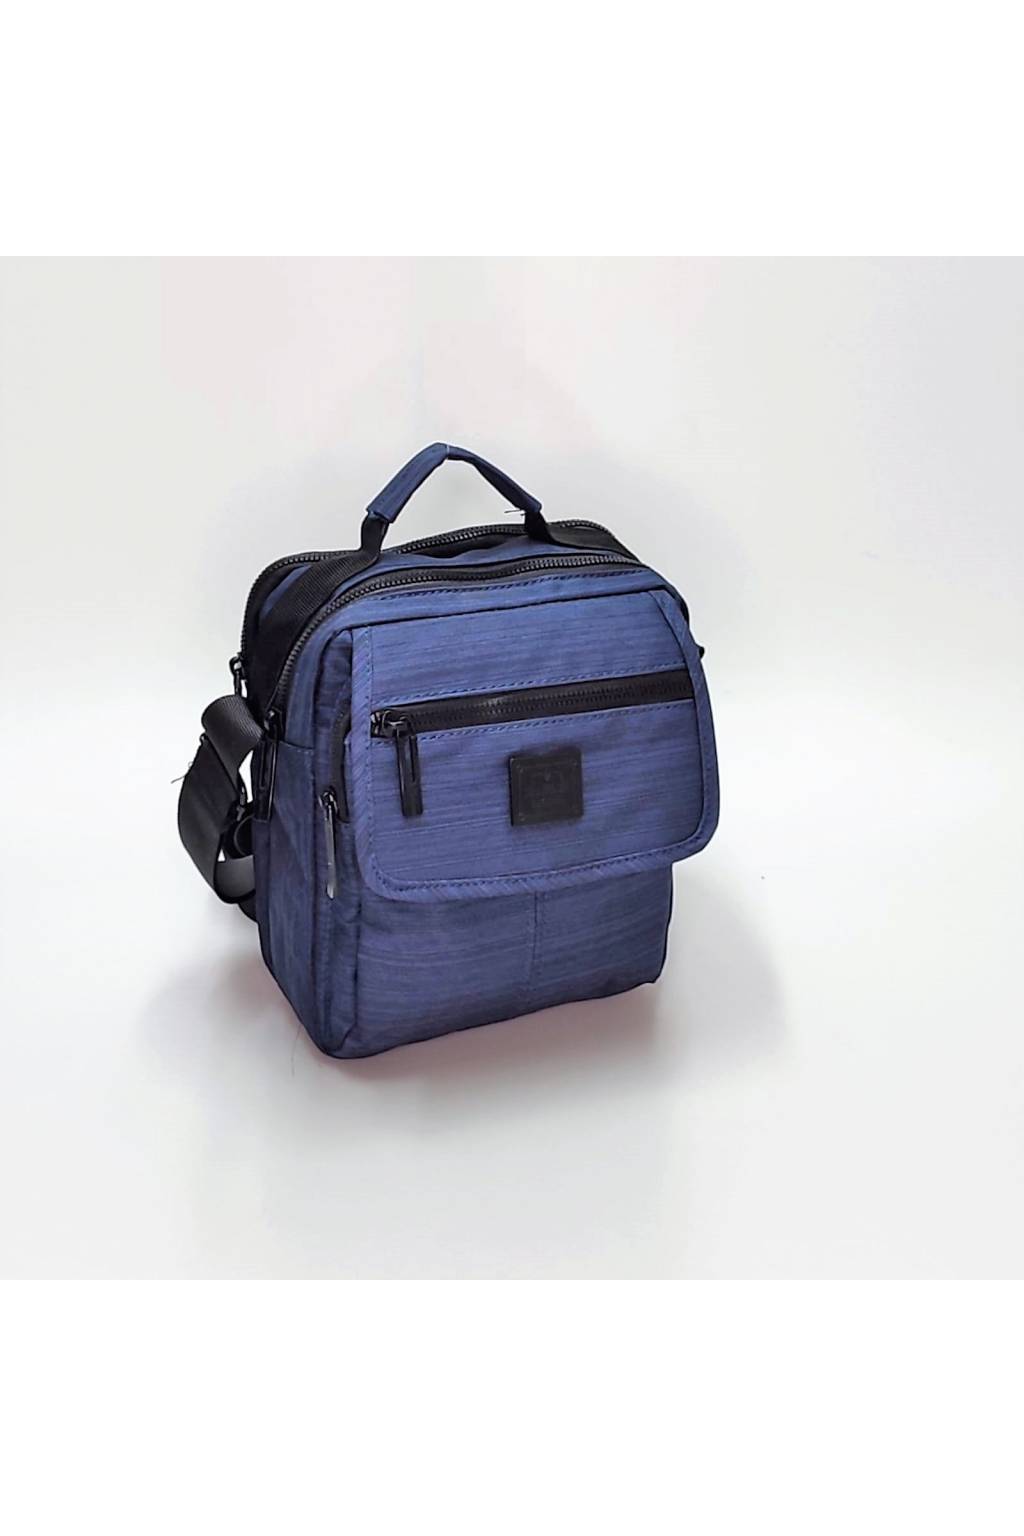 Pánska crossbody taška B7258 modrá www.kabelky vypredaj (9)